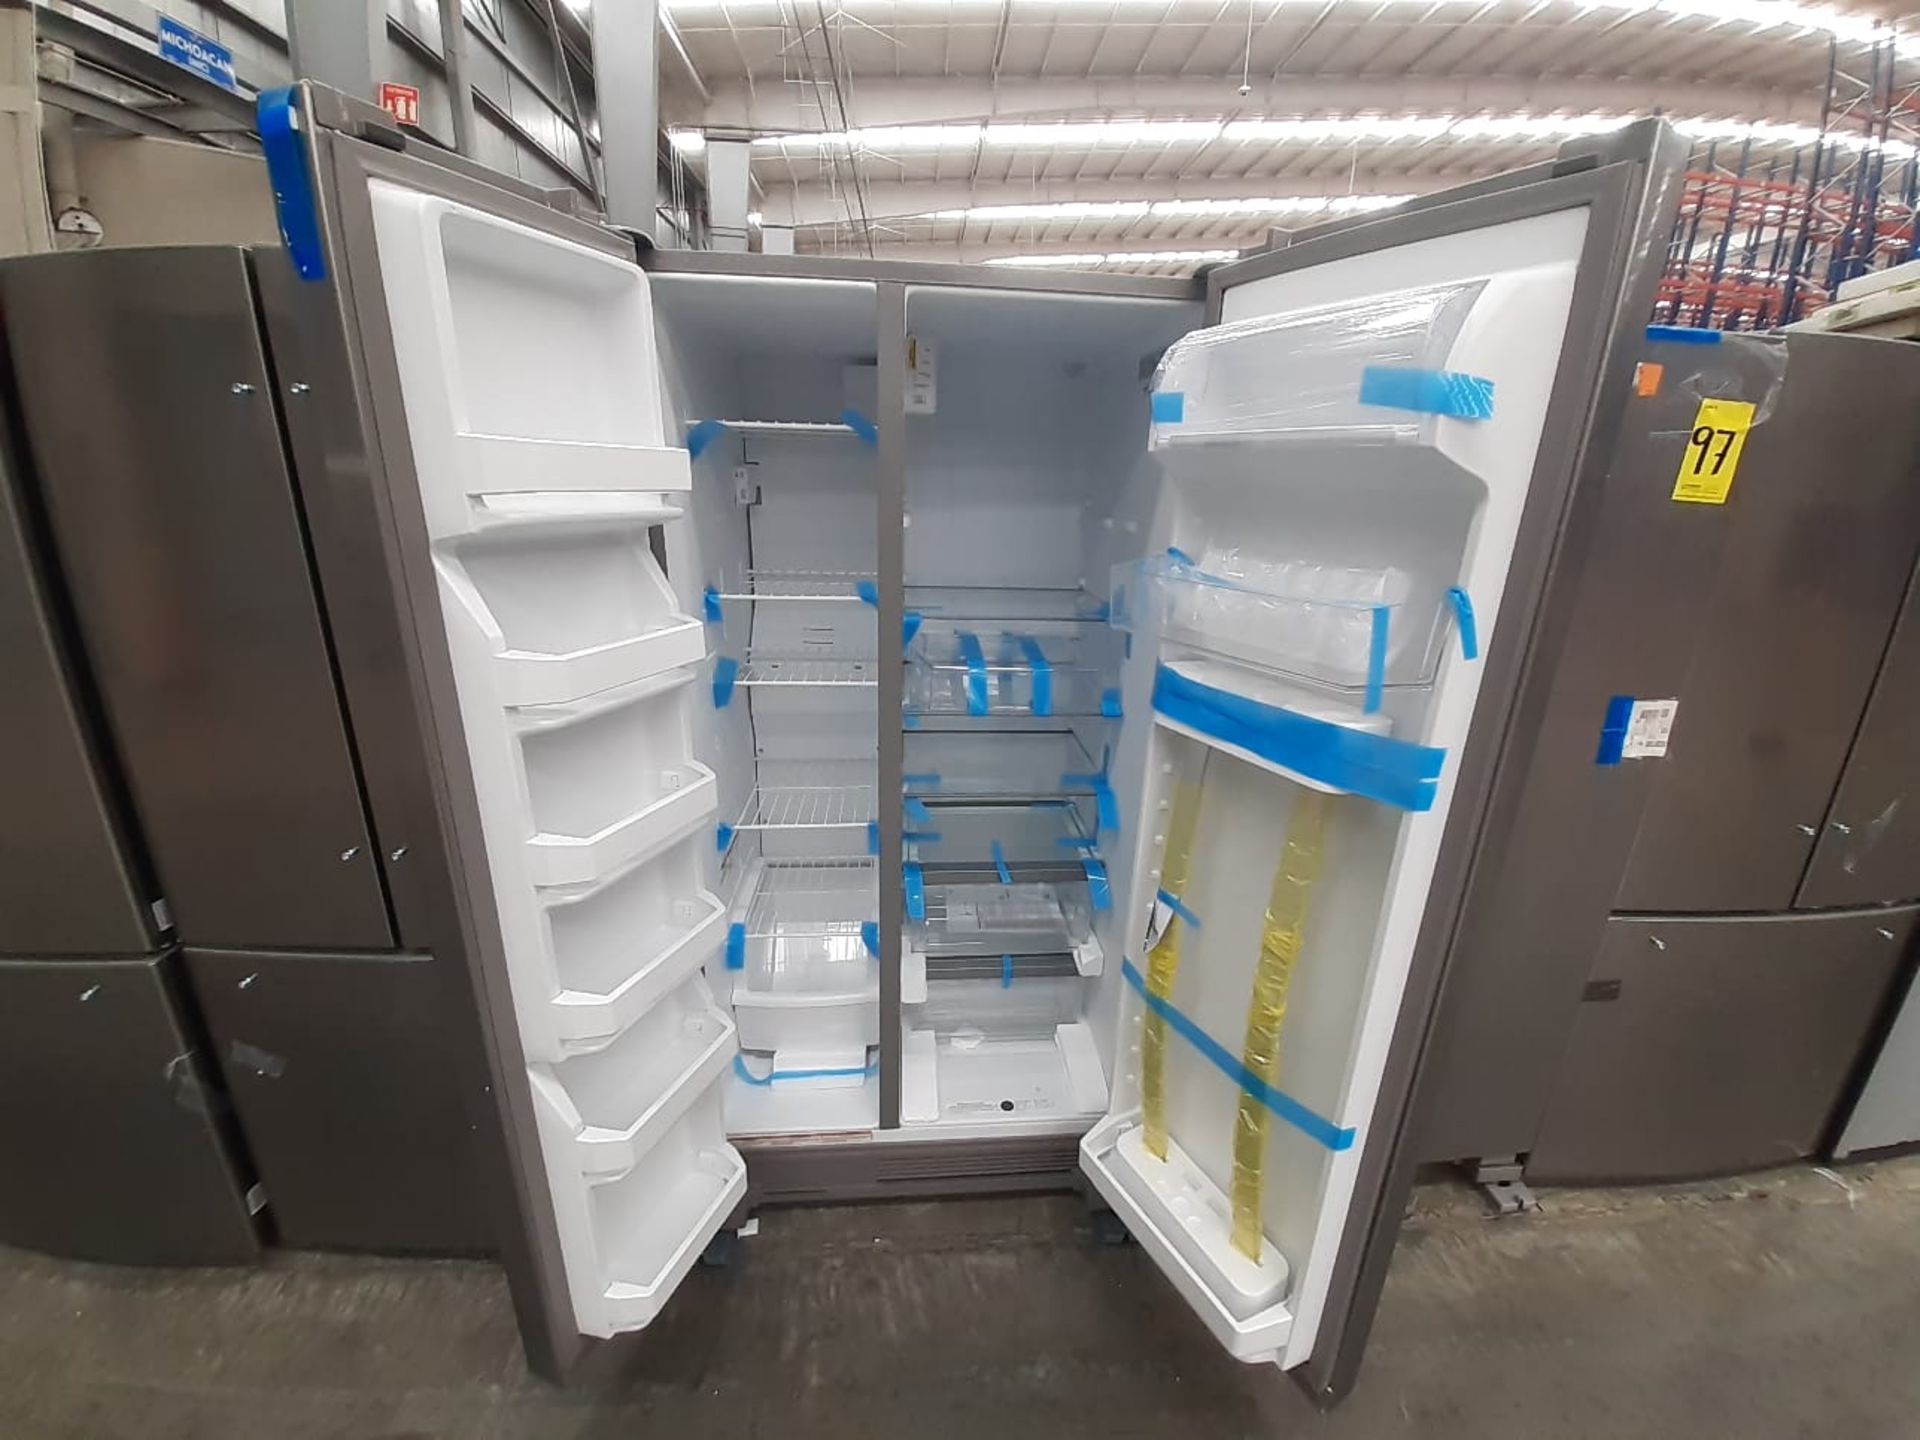 (Nuevo) Lote de 1 Refrigerador sin Dispensador de Agua Marca WHIRLPOOL, Modelo WD56C0S, Serie 82188 - Image 4 of 5